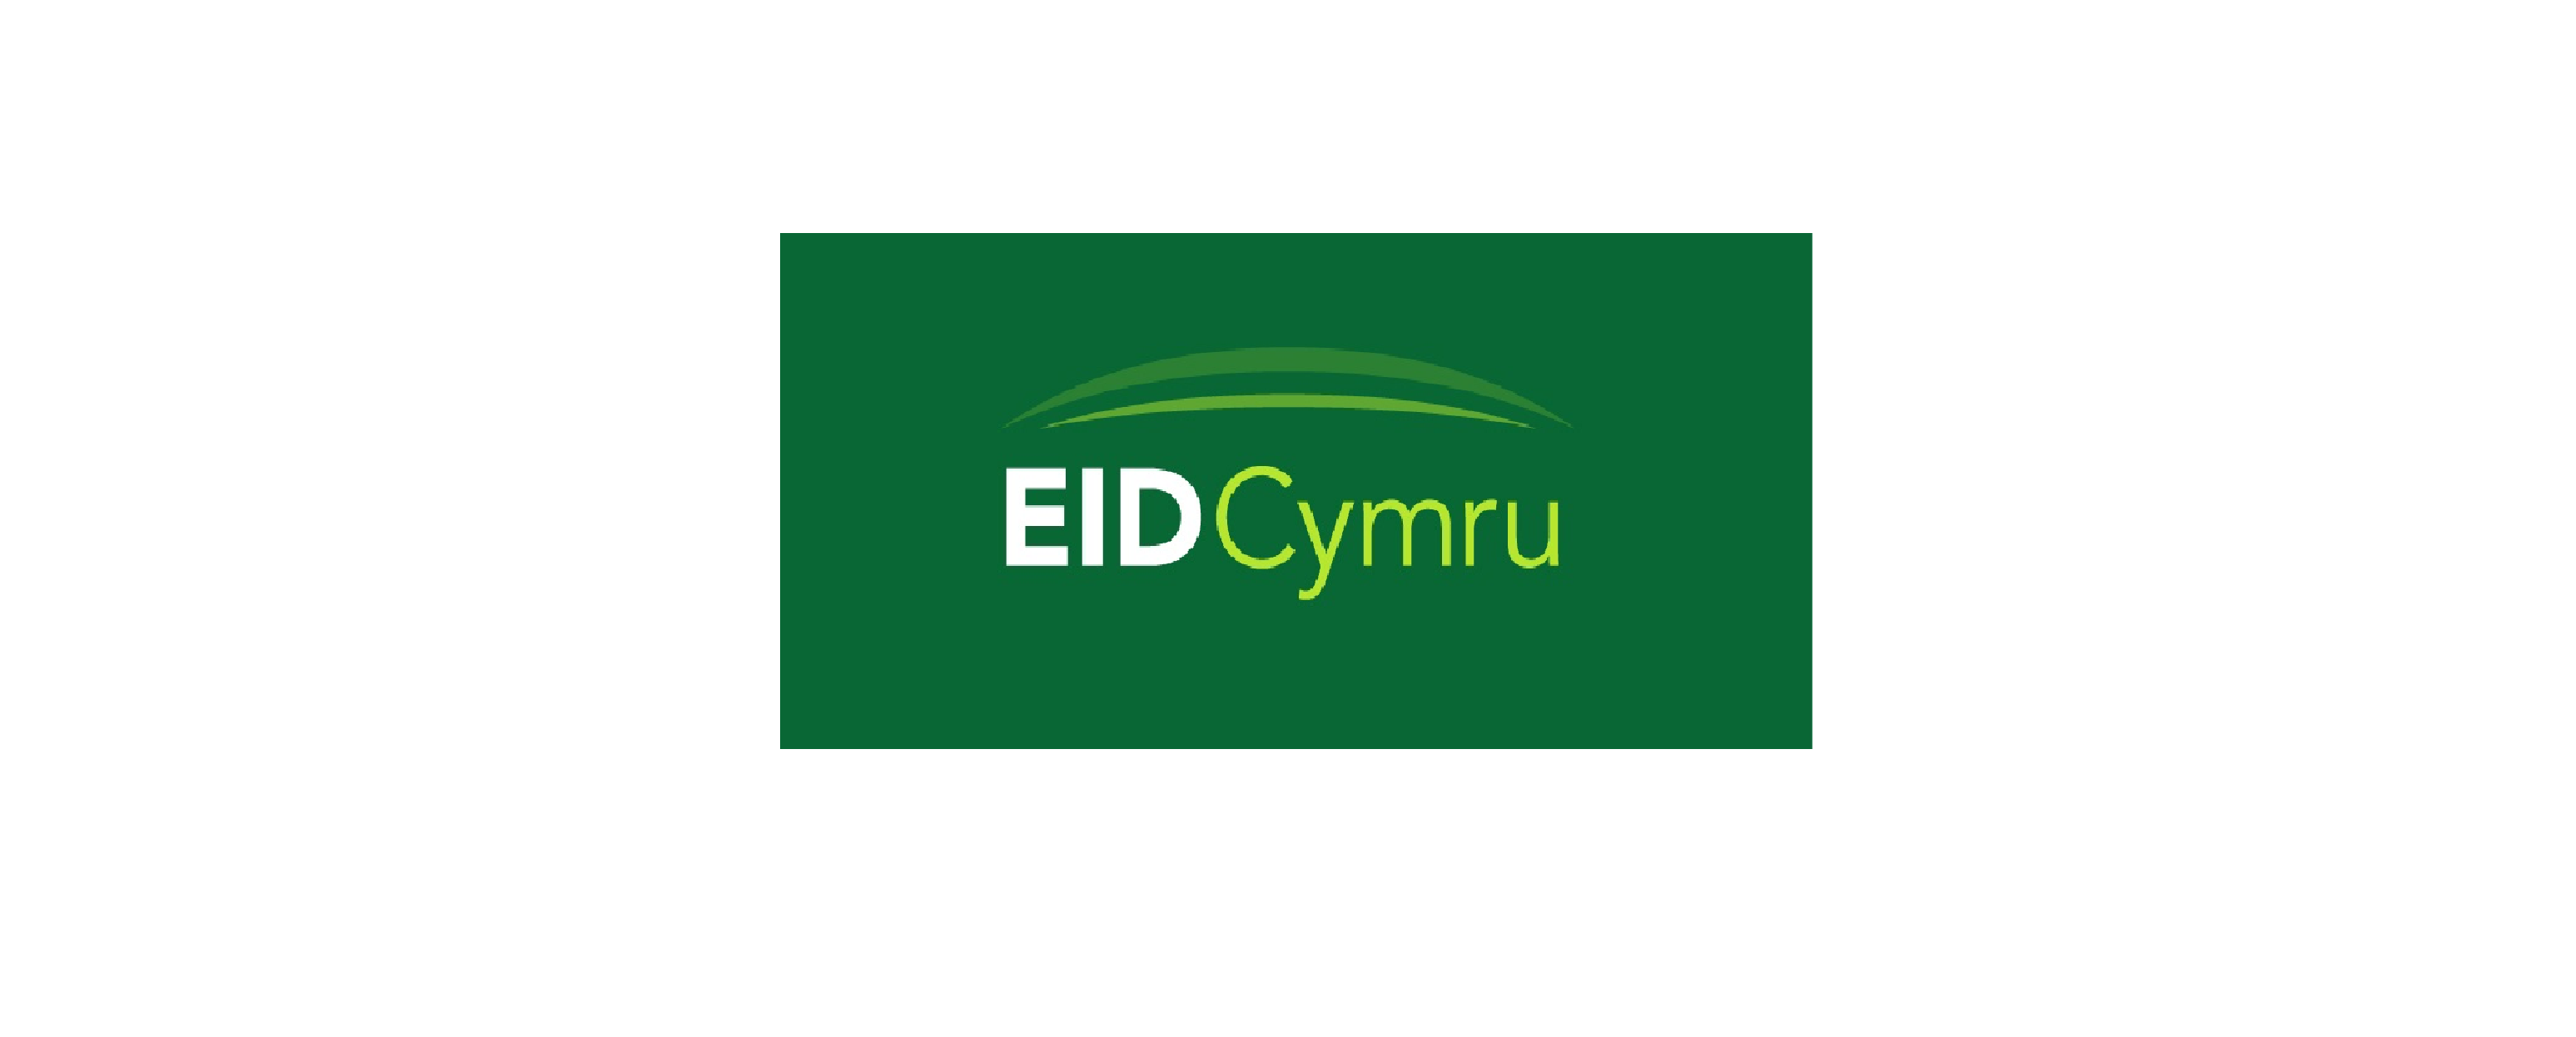 Eid Cymru